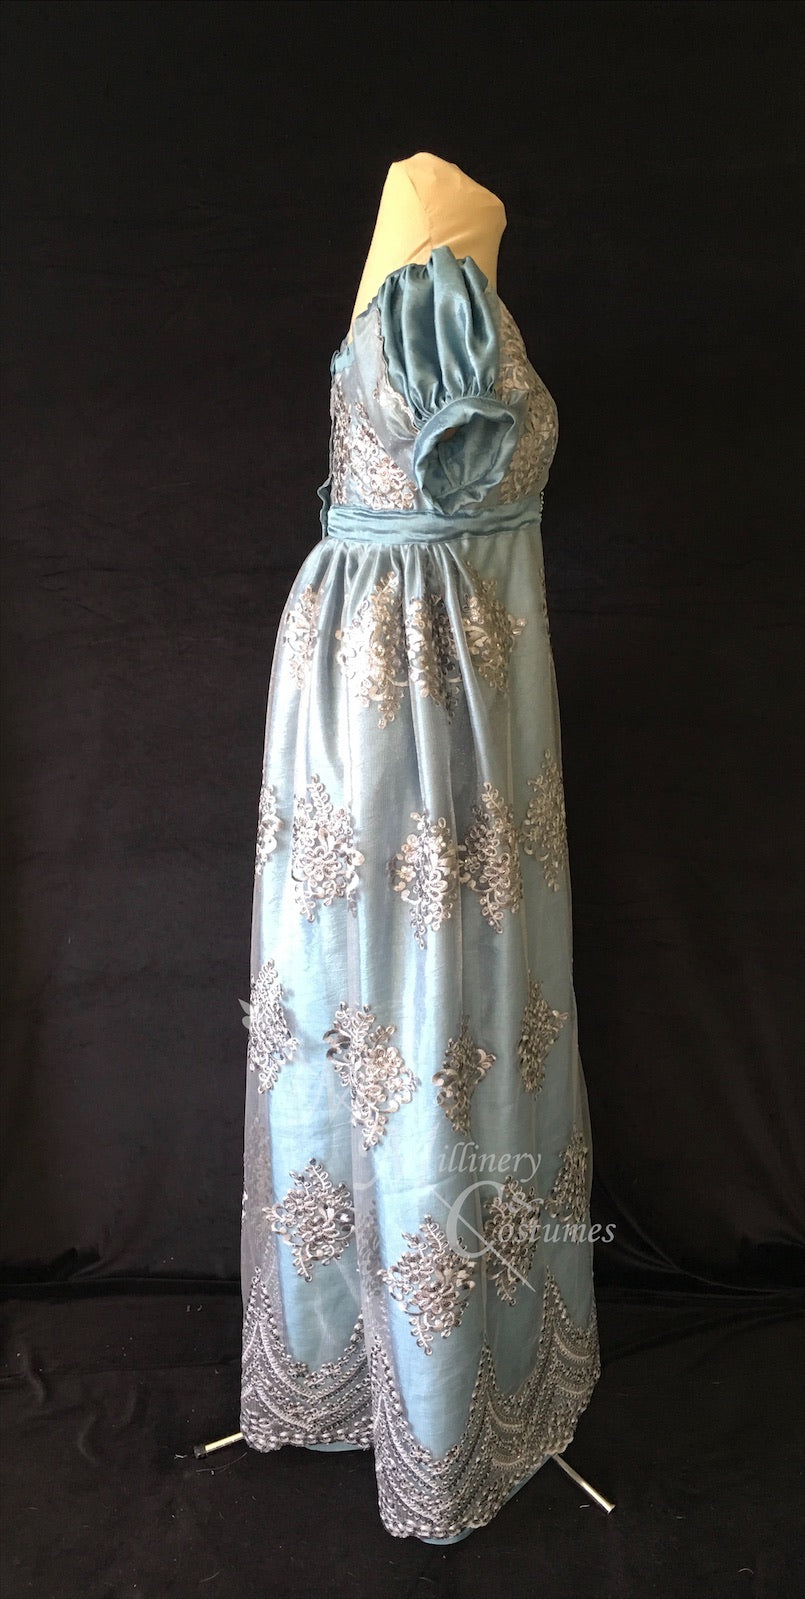 Silver Turquoise Elegant Lace Net Regency Jane Austen Ball Dress Gown